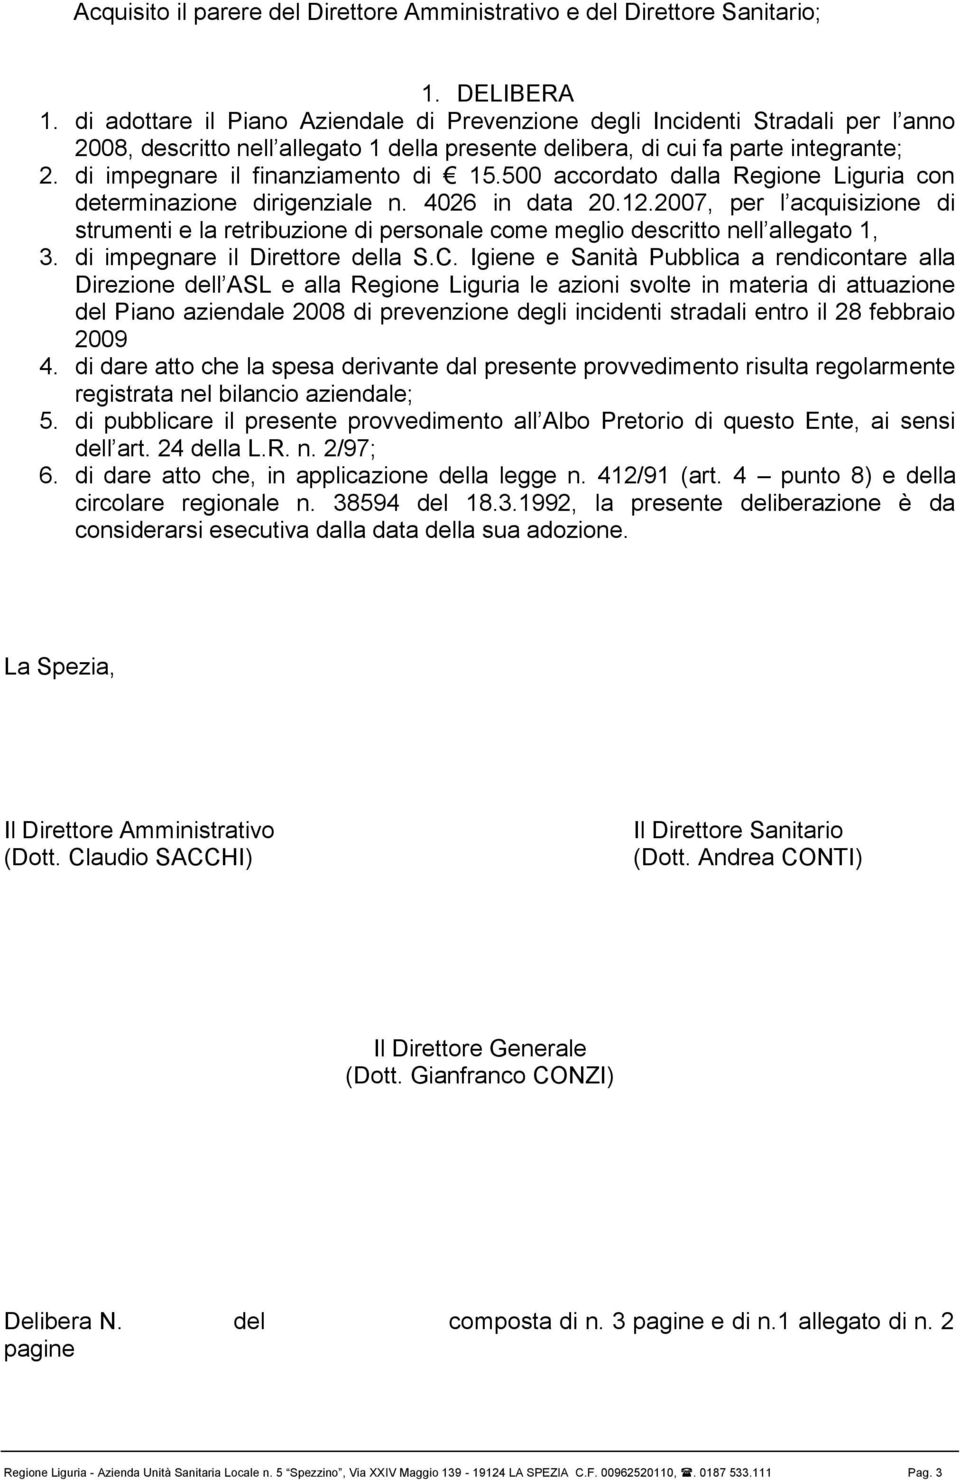 di impegnare il finanziamento di 15.500 accordato dalla Regione Liguria con determinazione dirigenziale n. 4026 in data 20.12.